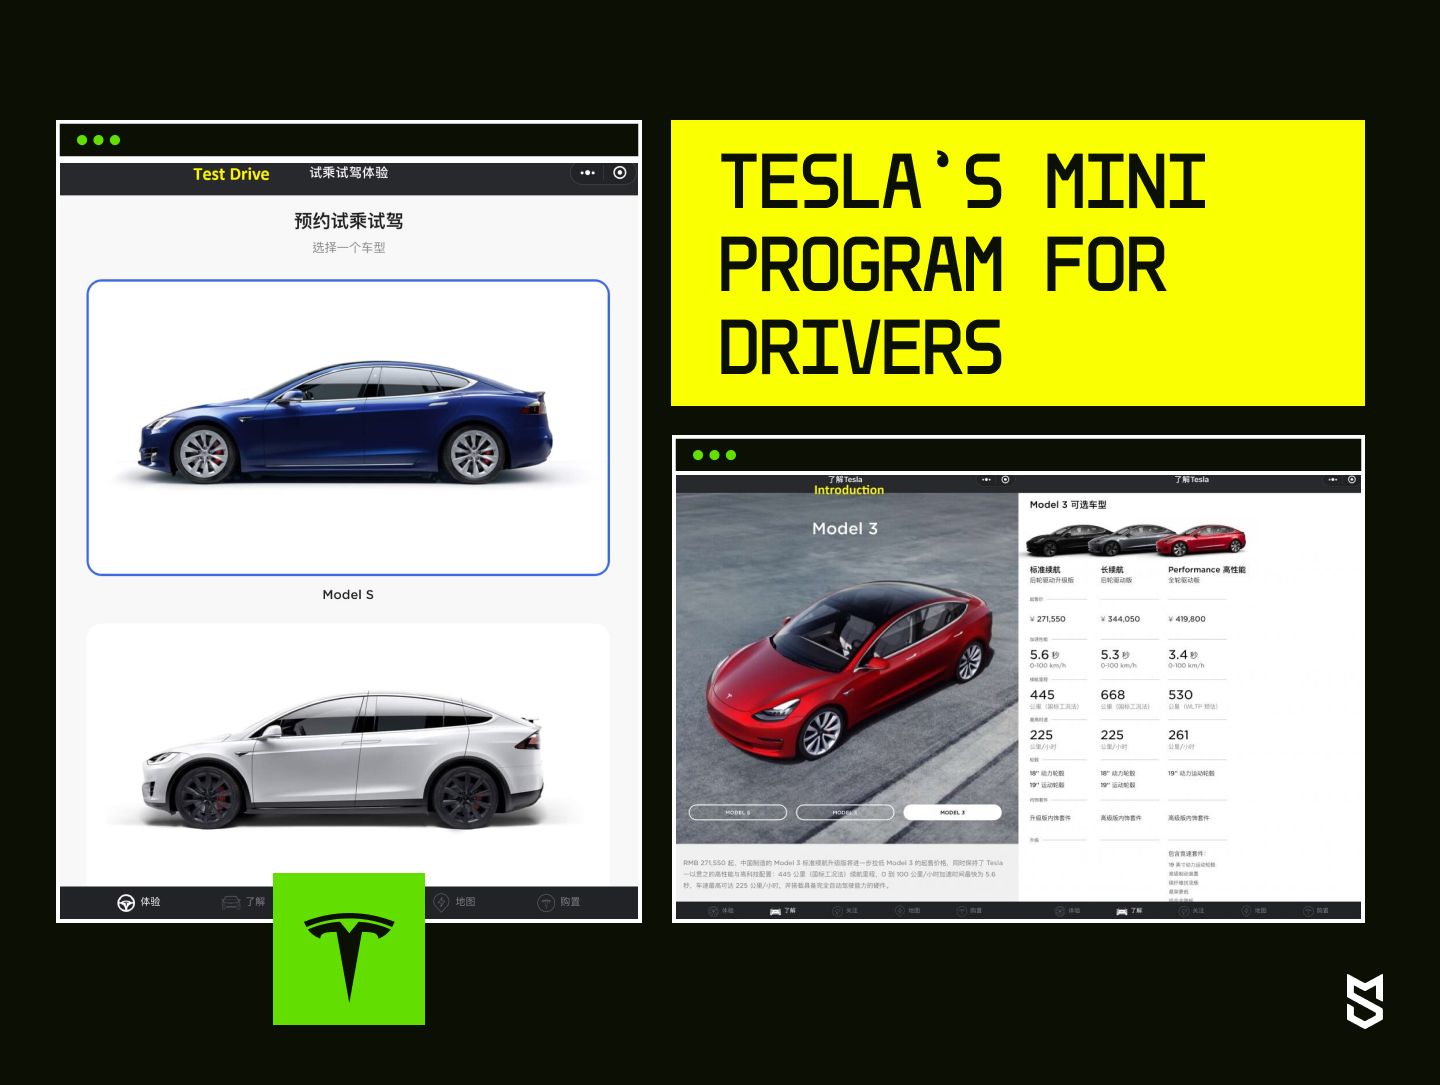 Tesla’s Mini Program for drivers